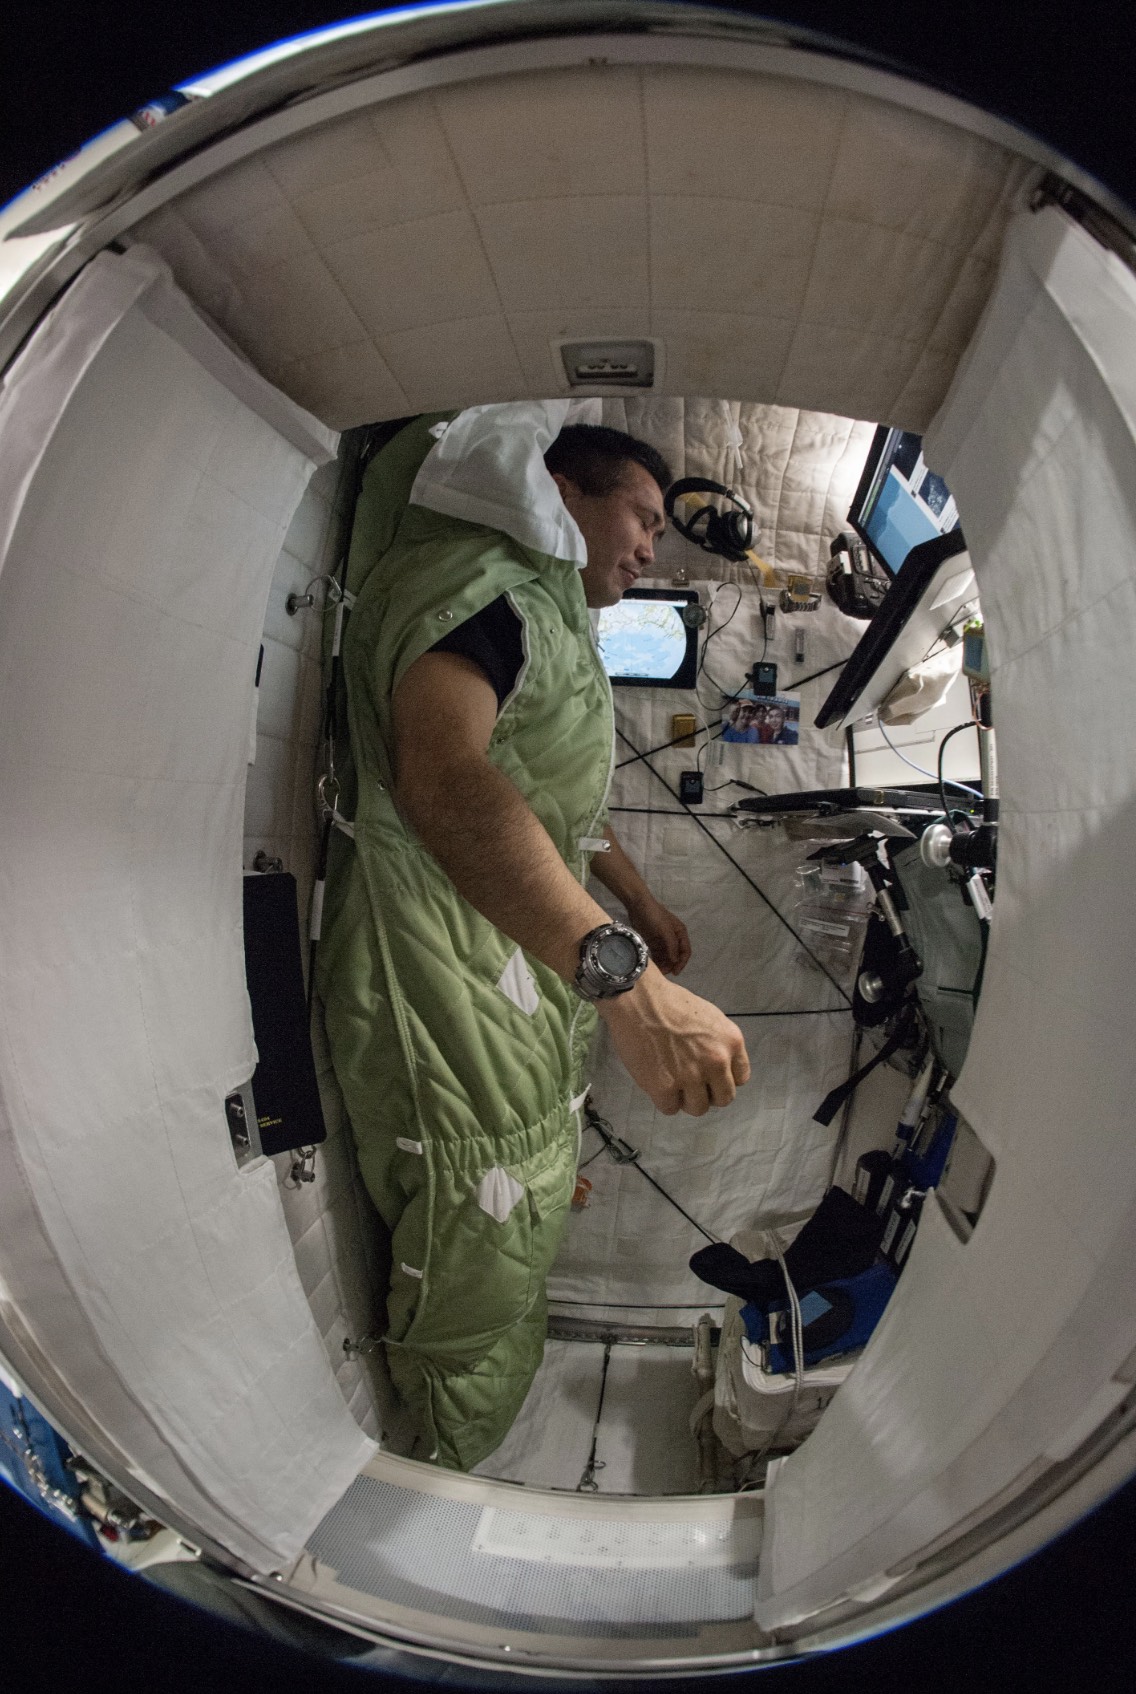 Vista del astronauta de JAXA (Agencia Japonesa de Exploración Aeroespacial) Koichi Wakata, ingeniero de vuelo de la Expedición 38, amarrado a su saco de dormir de color verde dentro de su estación para dormir ubicada en el Nodo 2. En la imagen, se ve al astronauta en vertical.